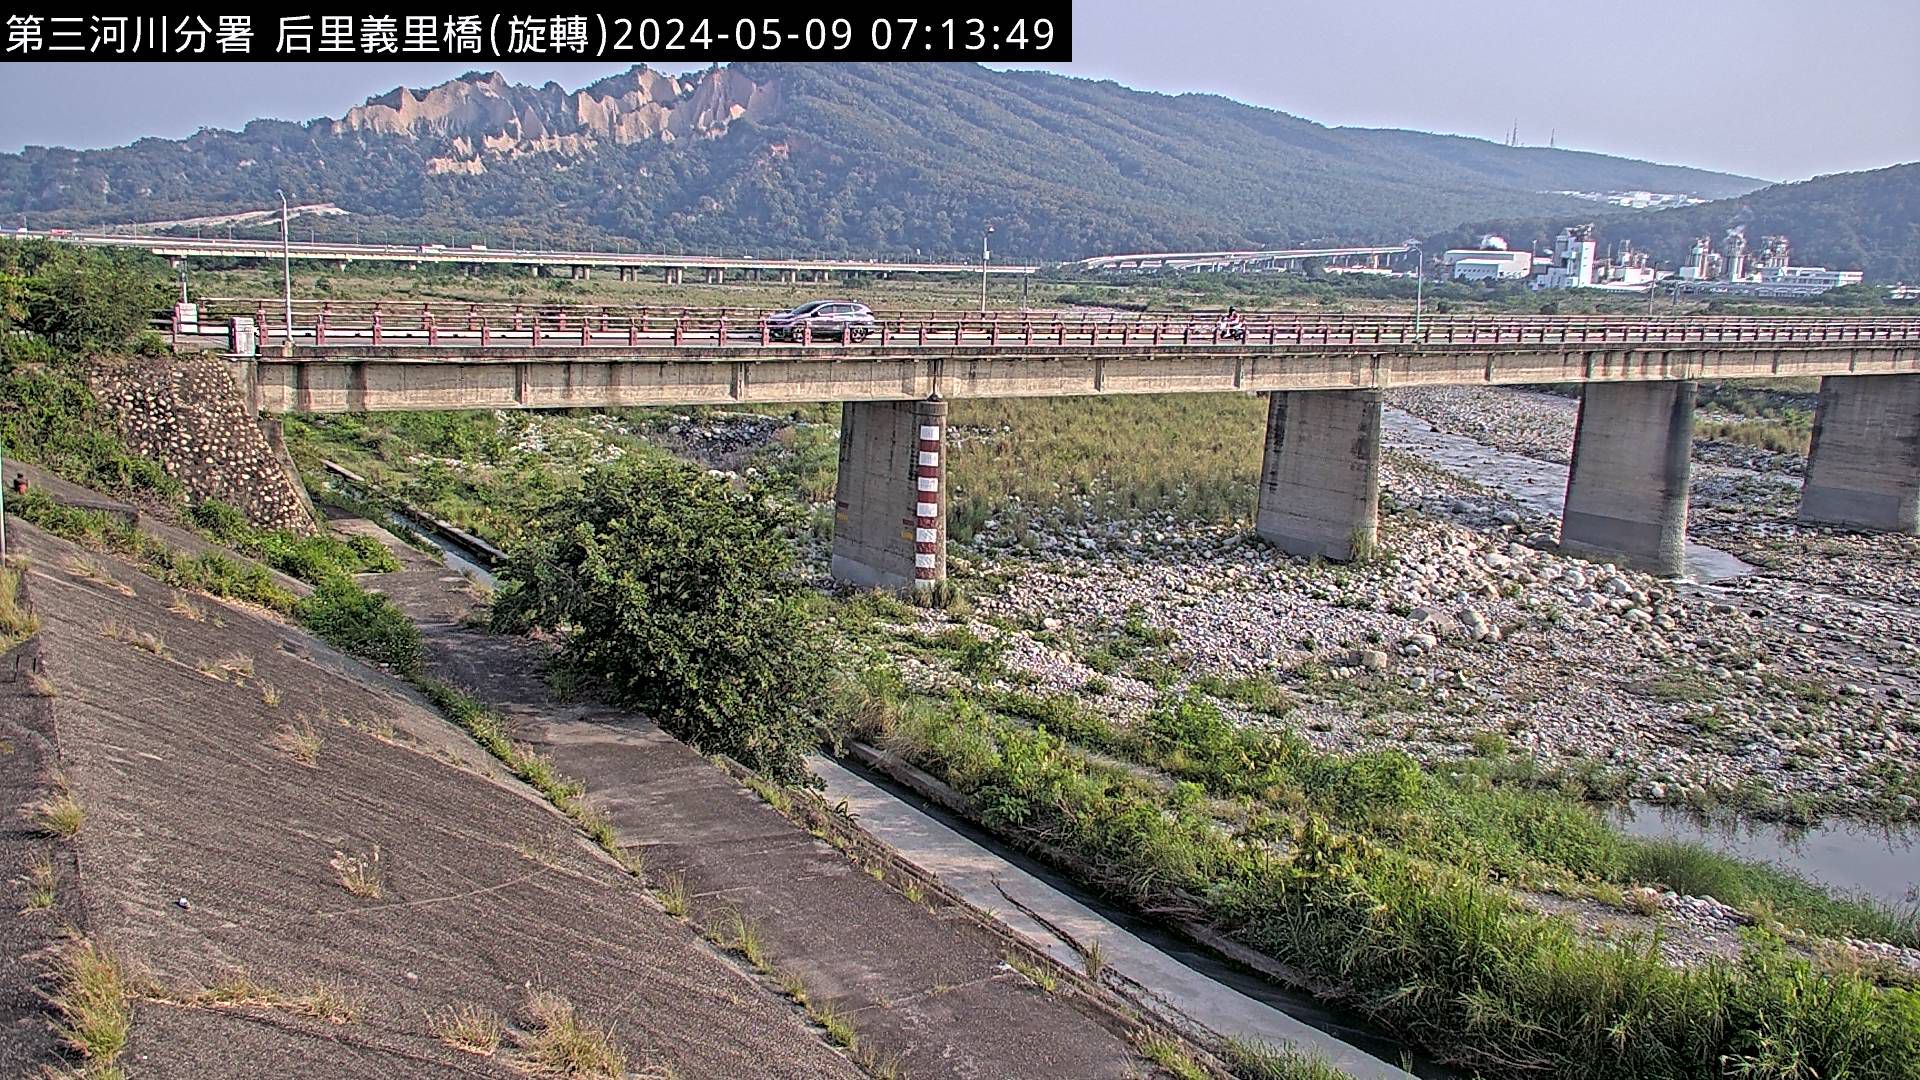 水利署水資源  防災中心 義里橋 距離4.0公里 氣溫21.7度